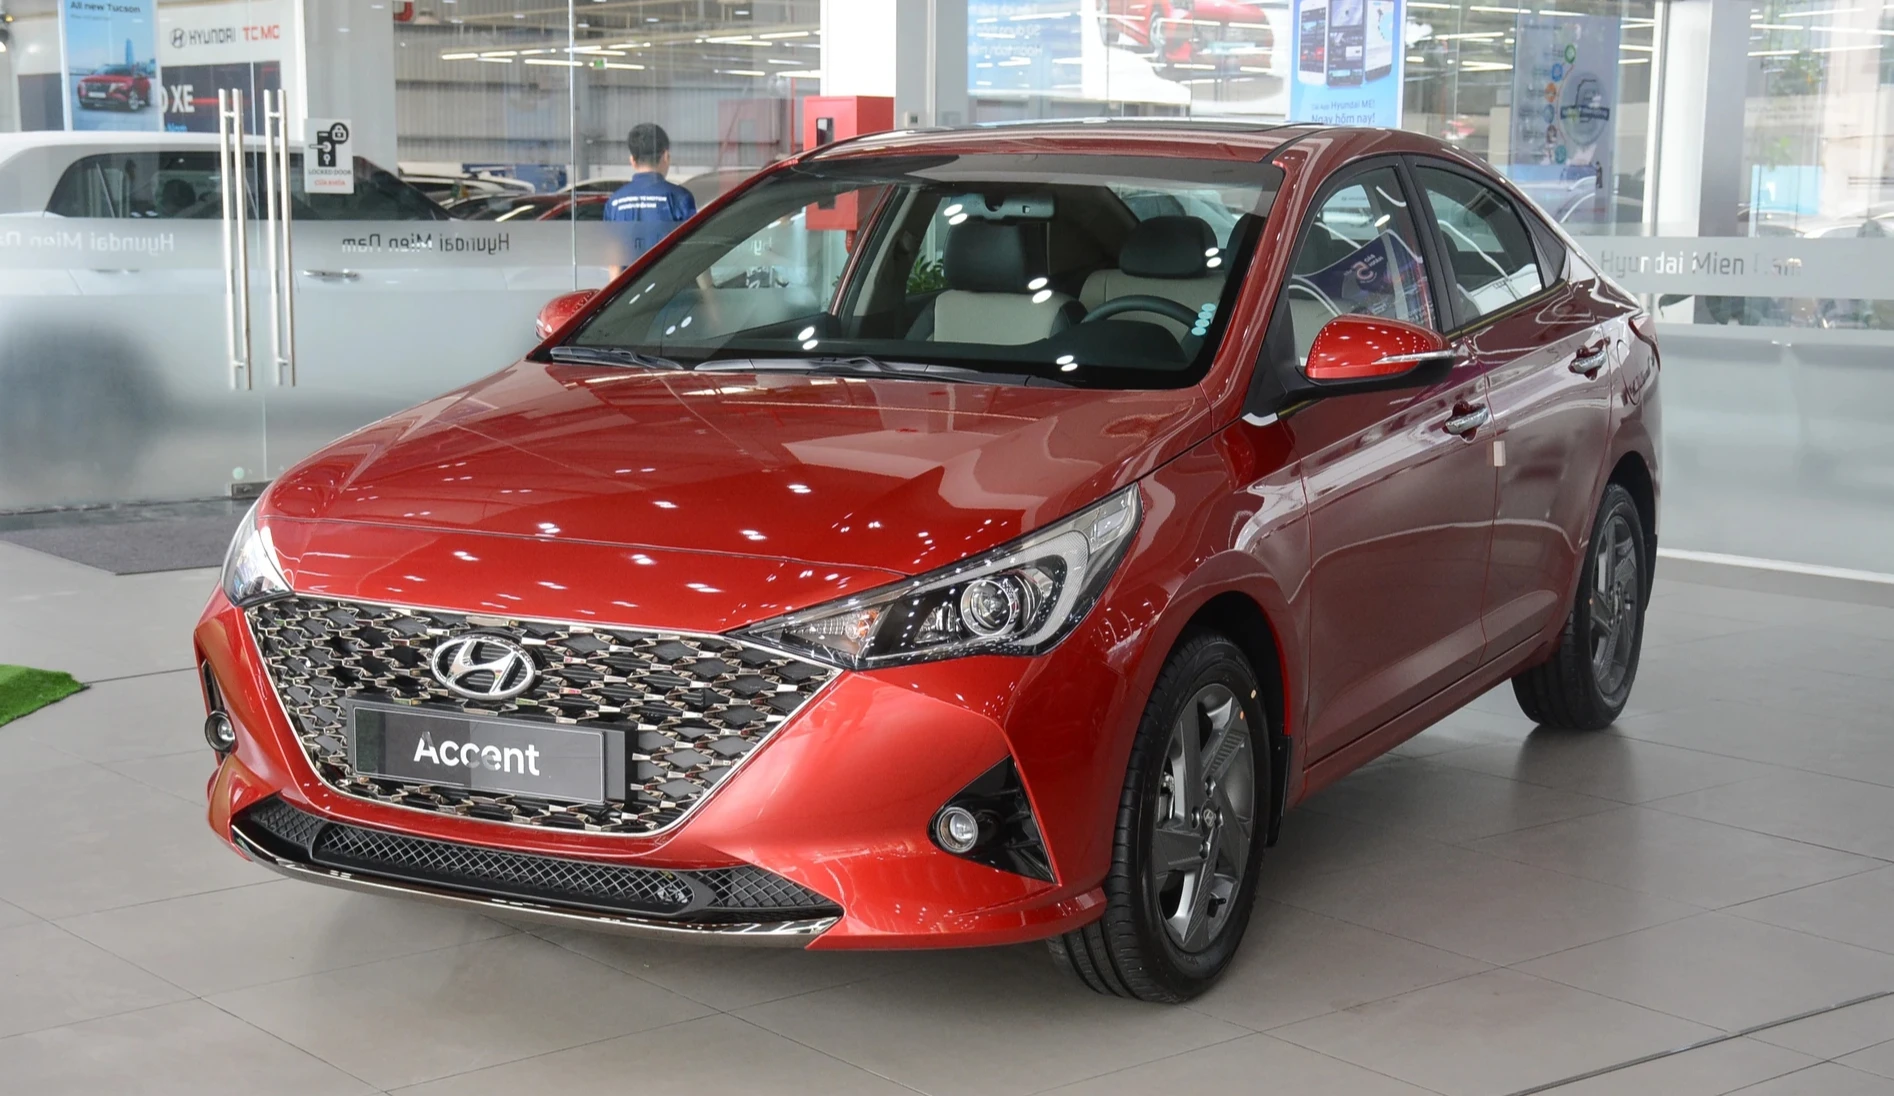 Hyundai Accent xếp thứ 5 trong cuộc đua doanh số tháng 3.2023, tăng 1 bậc so với tháng trước đó khi doanh số bán chỉ đạt 967 xe, tăng 602 xe. Tương tự những năm trước, Hyundai Accent tại Việt Nam do Hyundai Thành Công lắp ráp và phân phối, tuy nhiên xe không có nhiều thay đổi về thiết kế, công nghệ. Hyundai Accent hiện có 4 phiên bản, giá bán từ 426 - 542 triệu đồng.